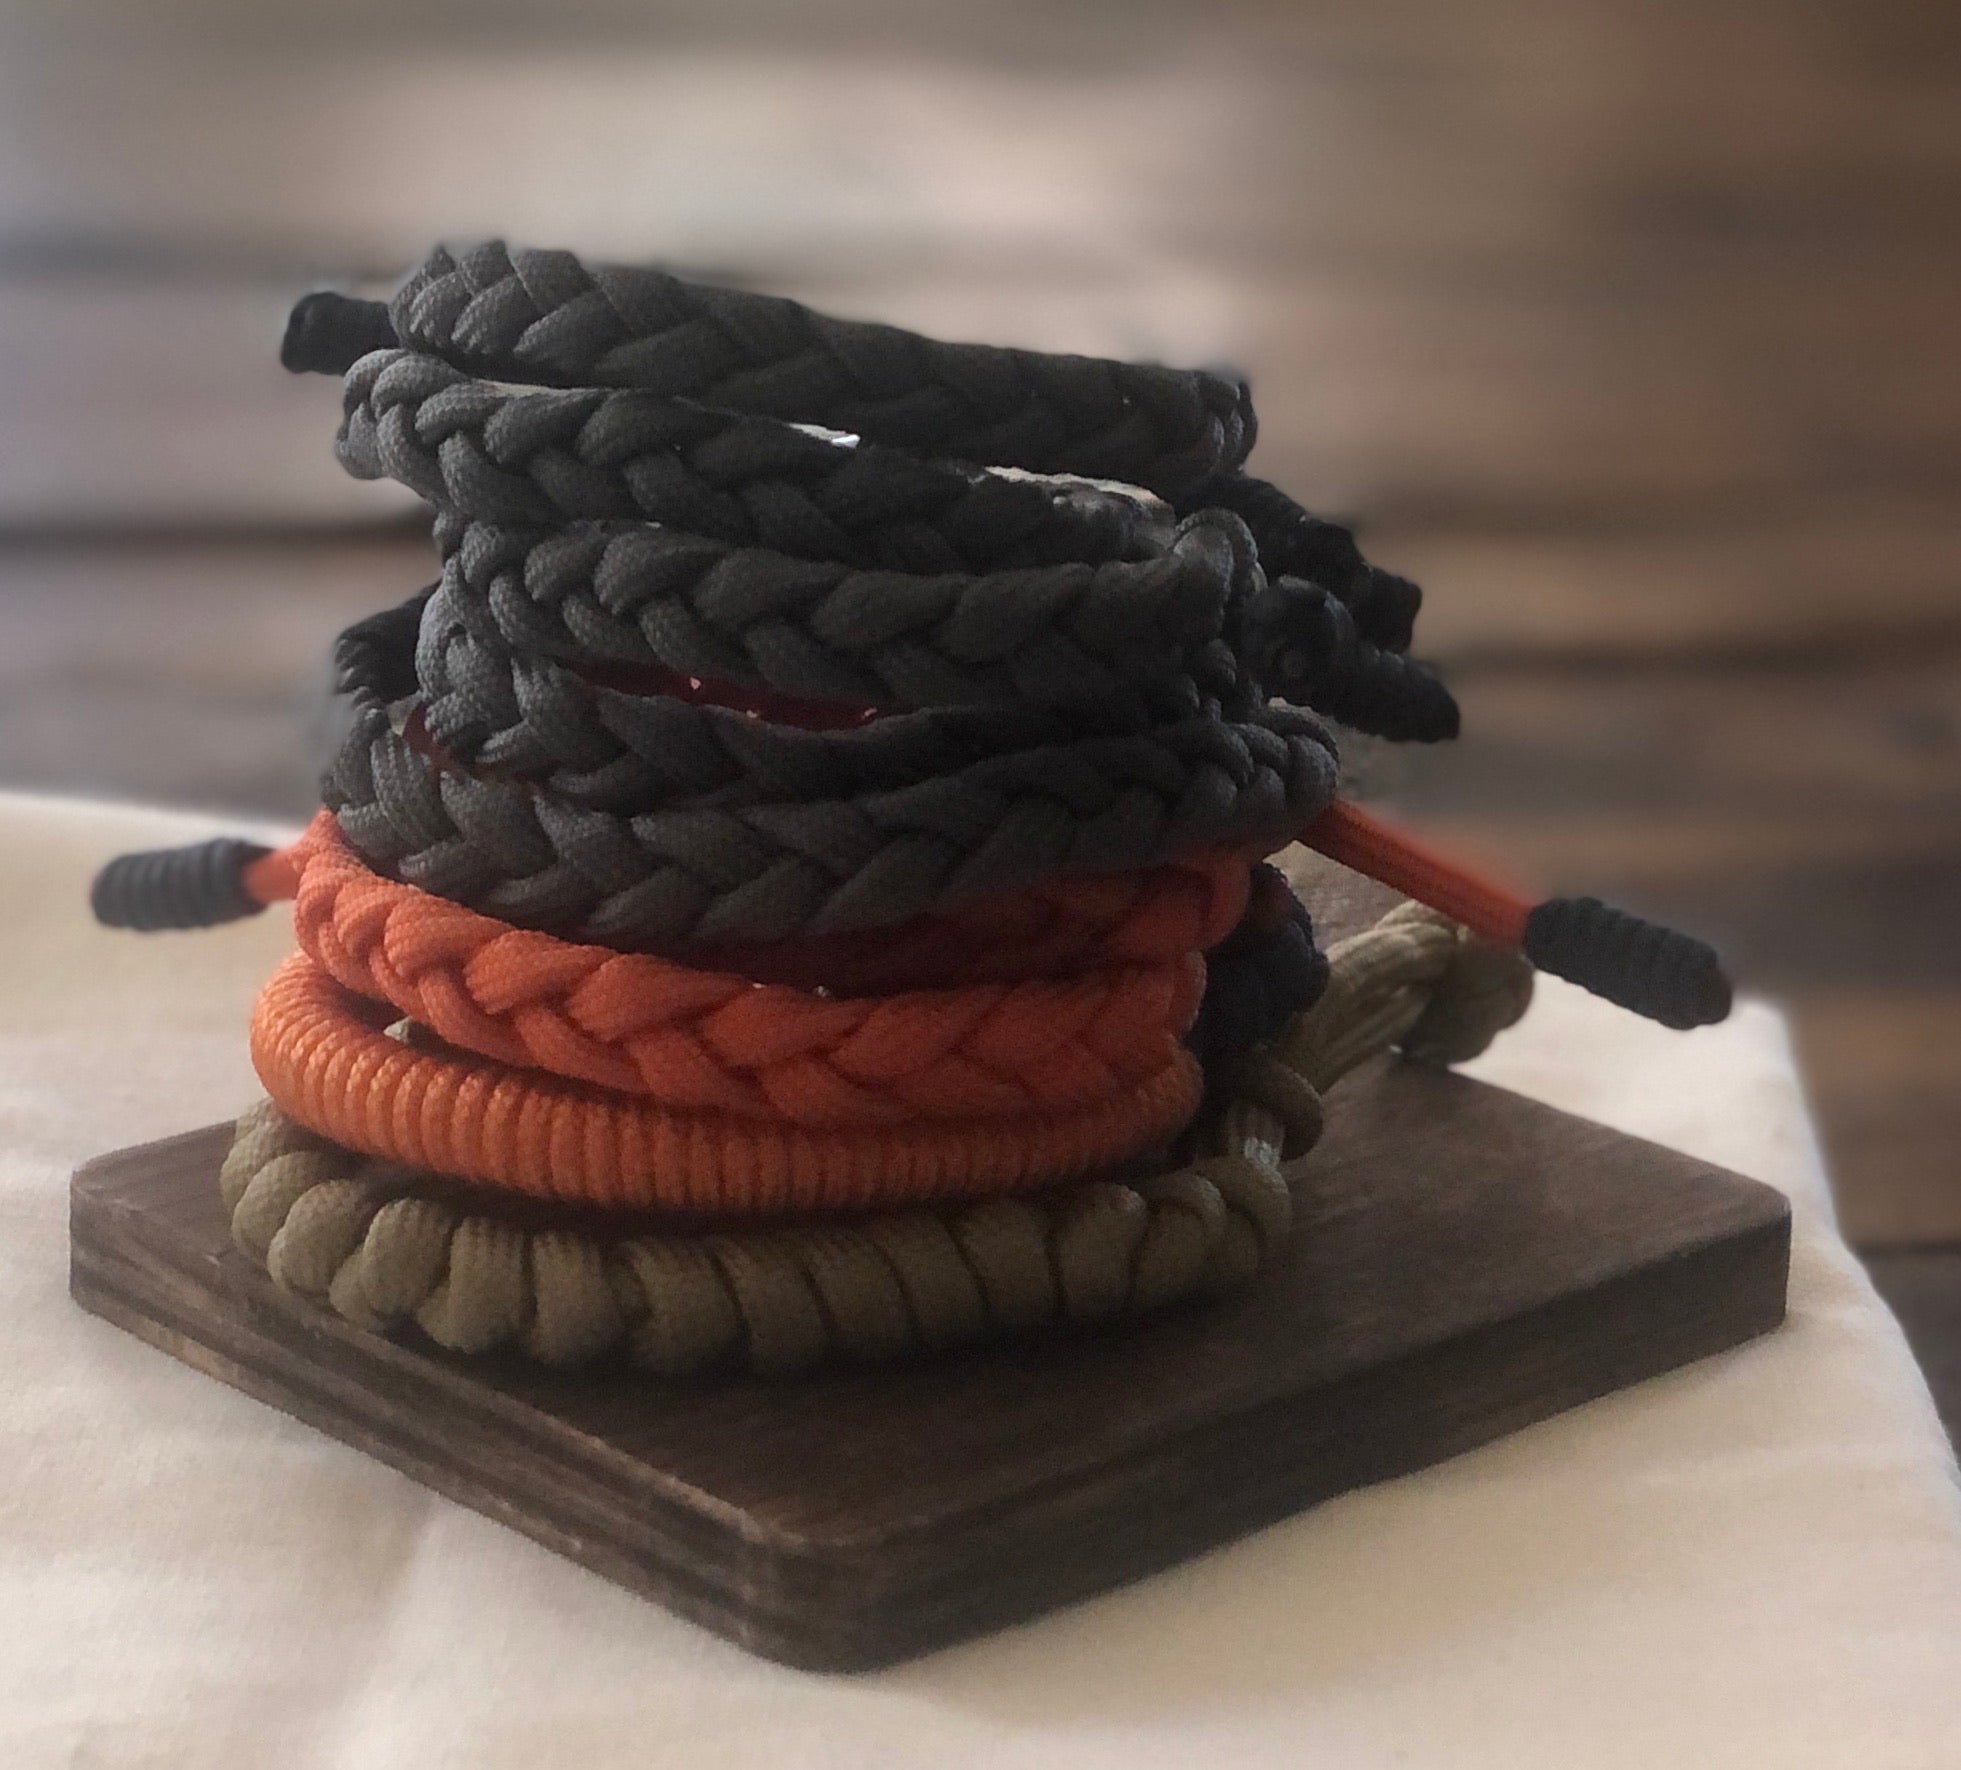 Cord Bracelet for Men